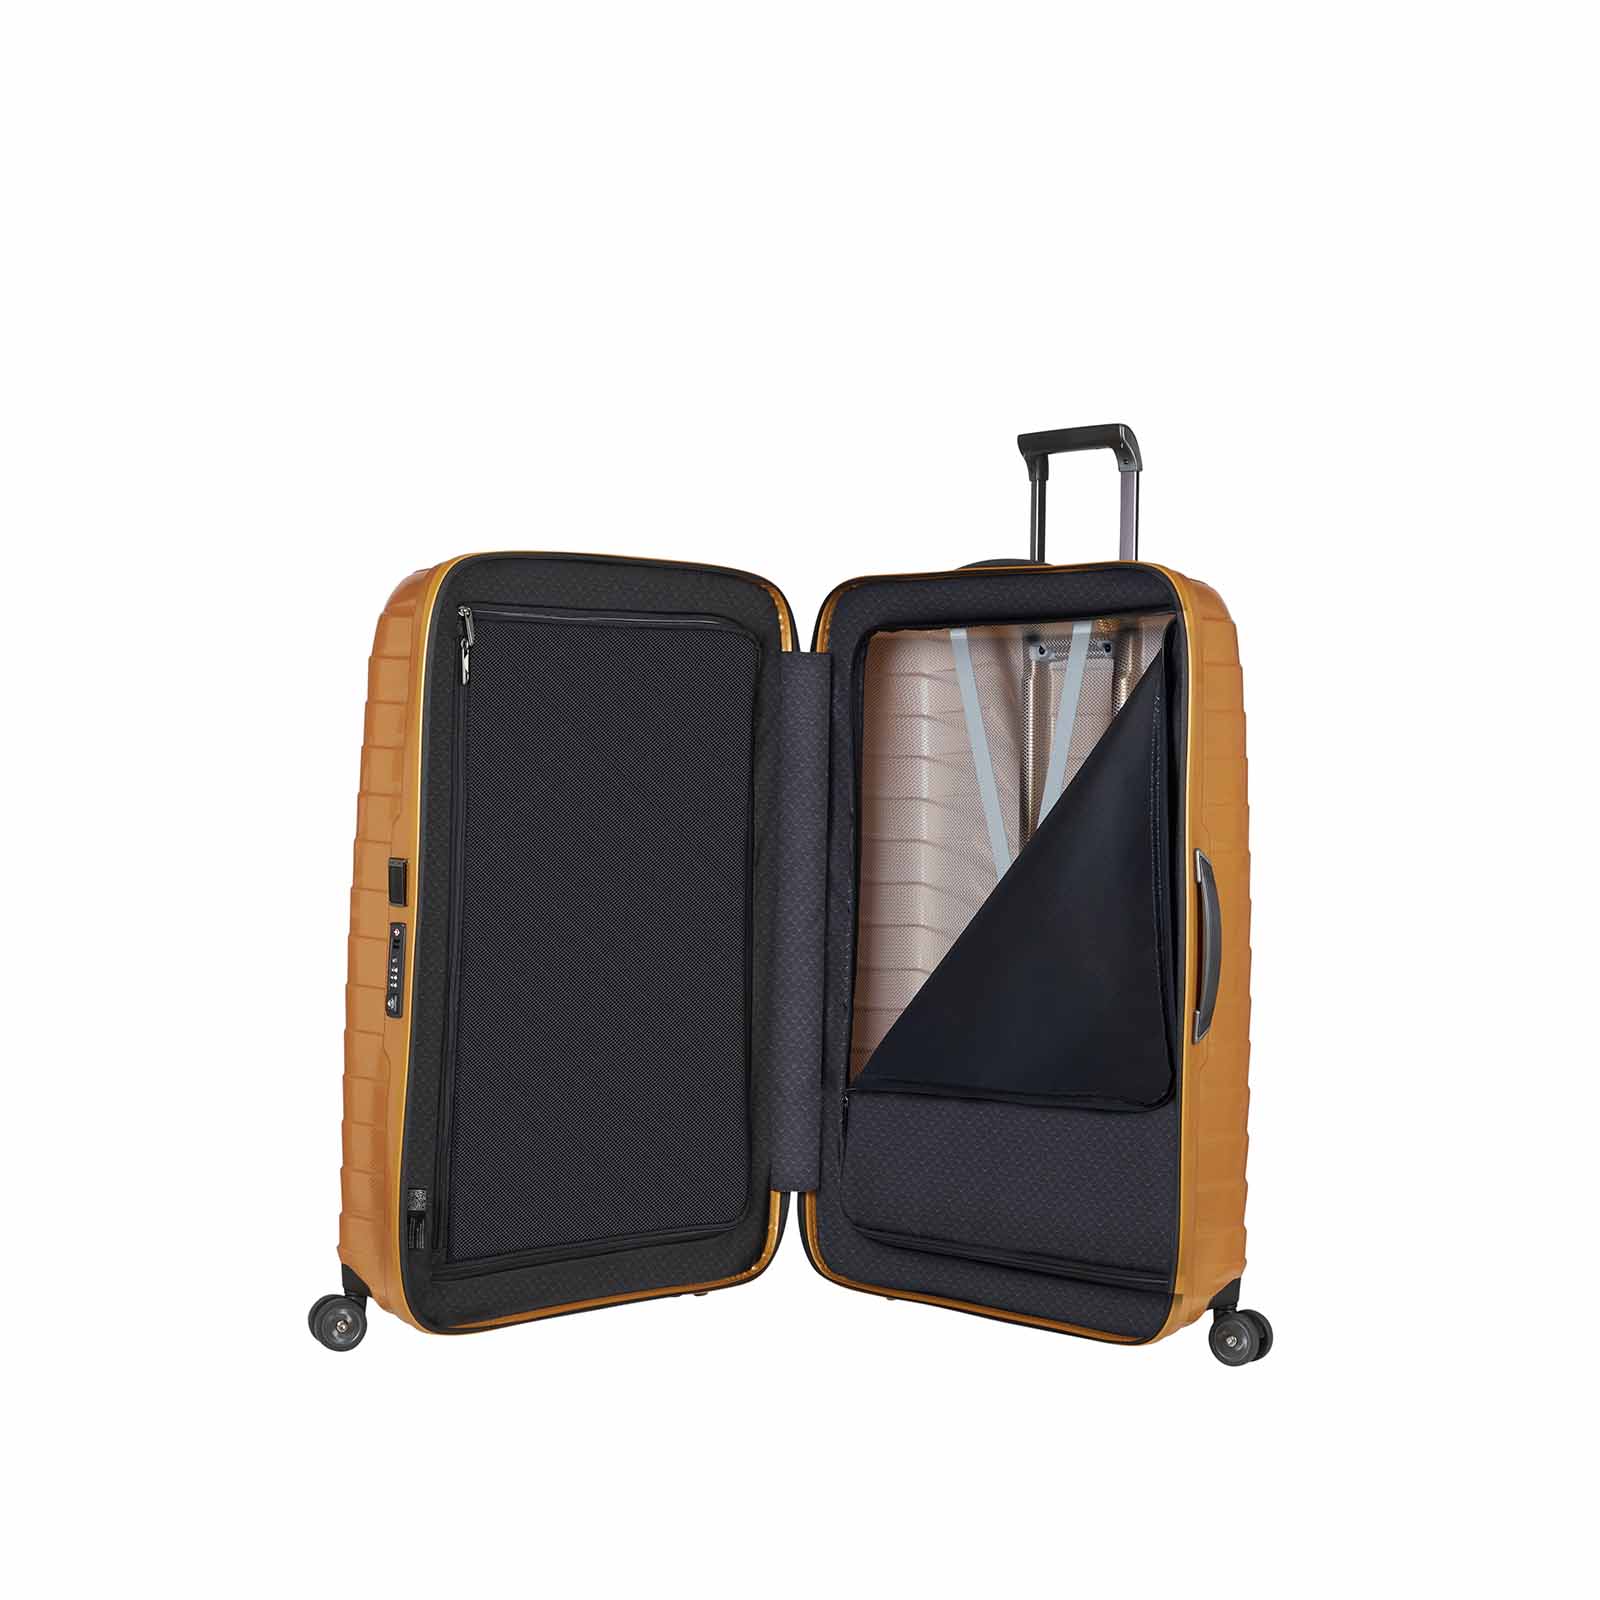 Samsonite-Proxis-81cm-Suitcase-Honey-Gold-Open